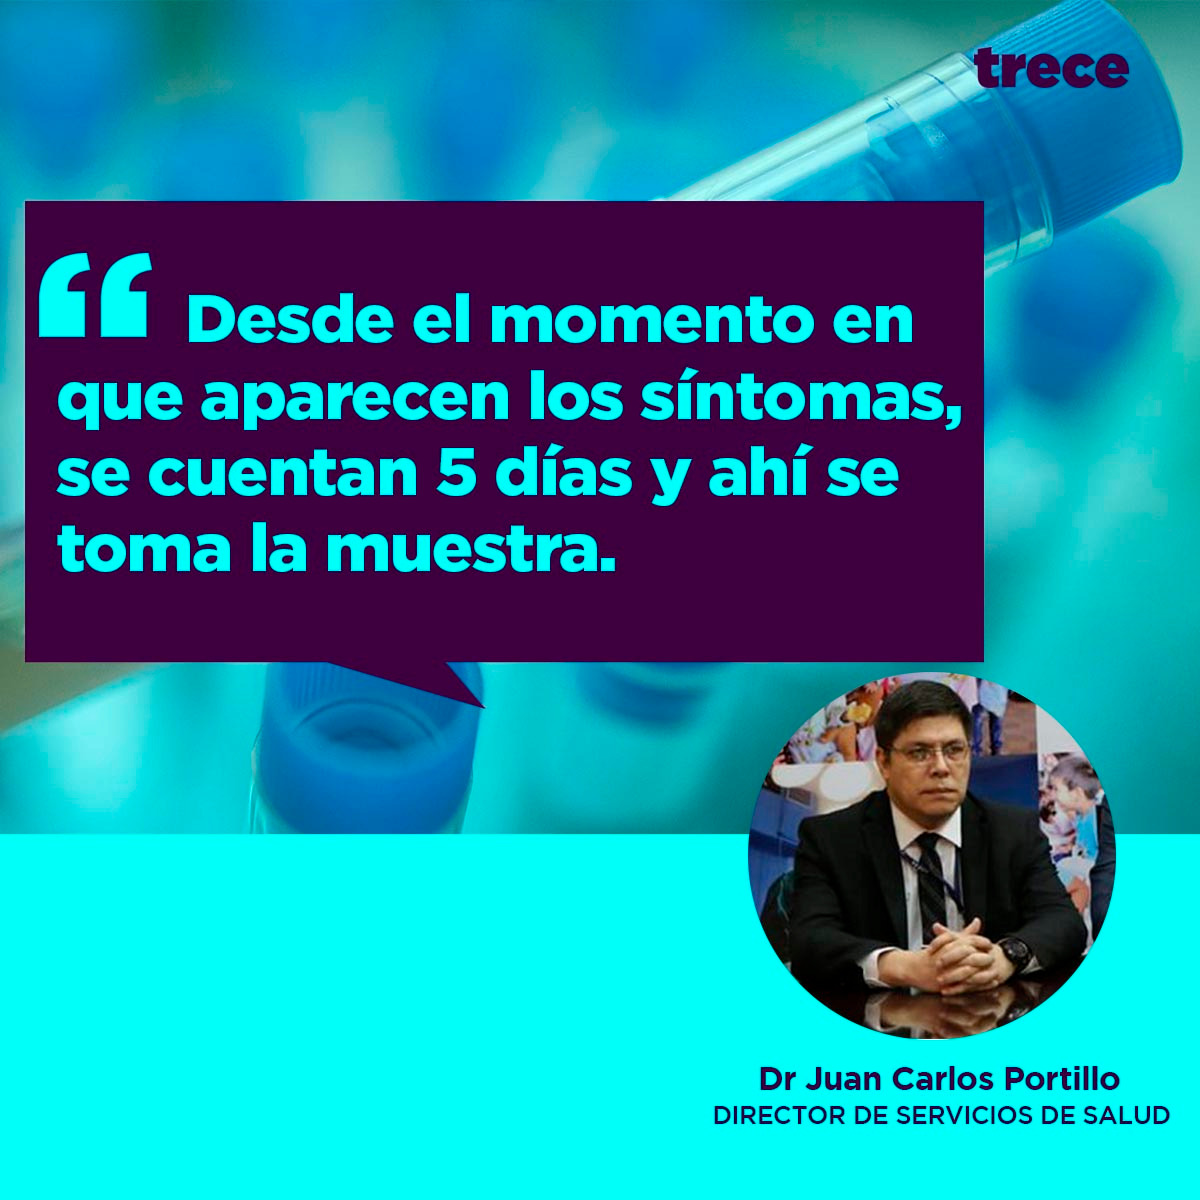 Dr. Juan Carlos Portillo